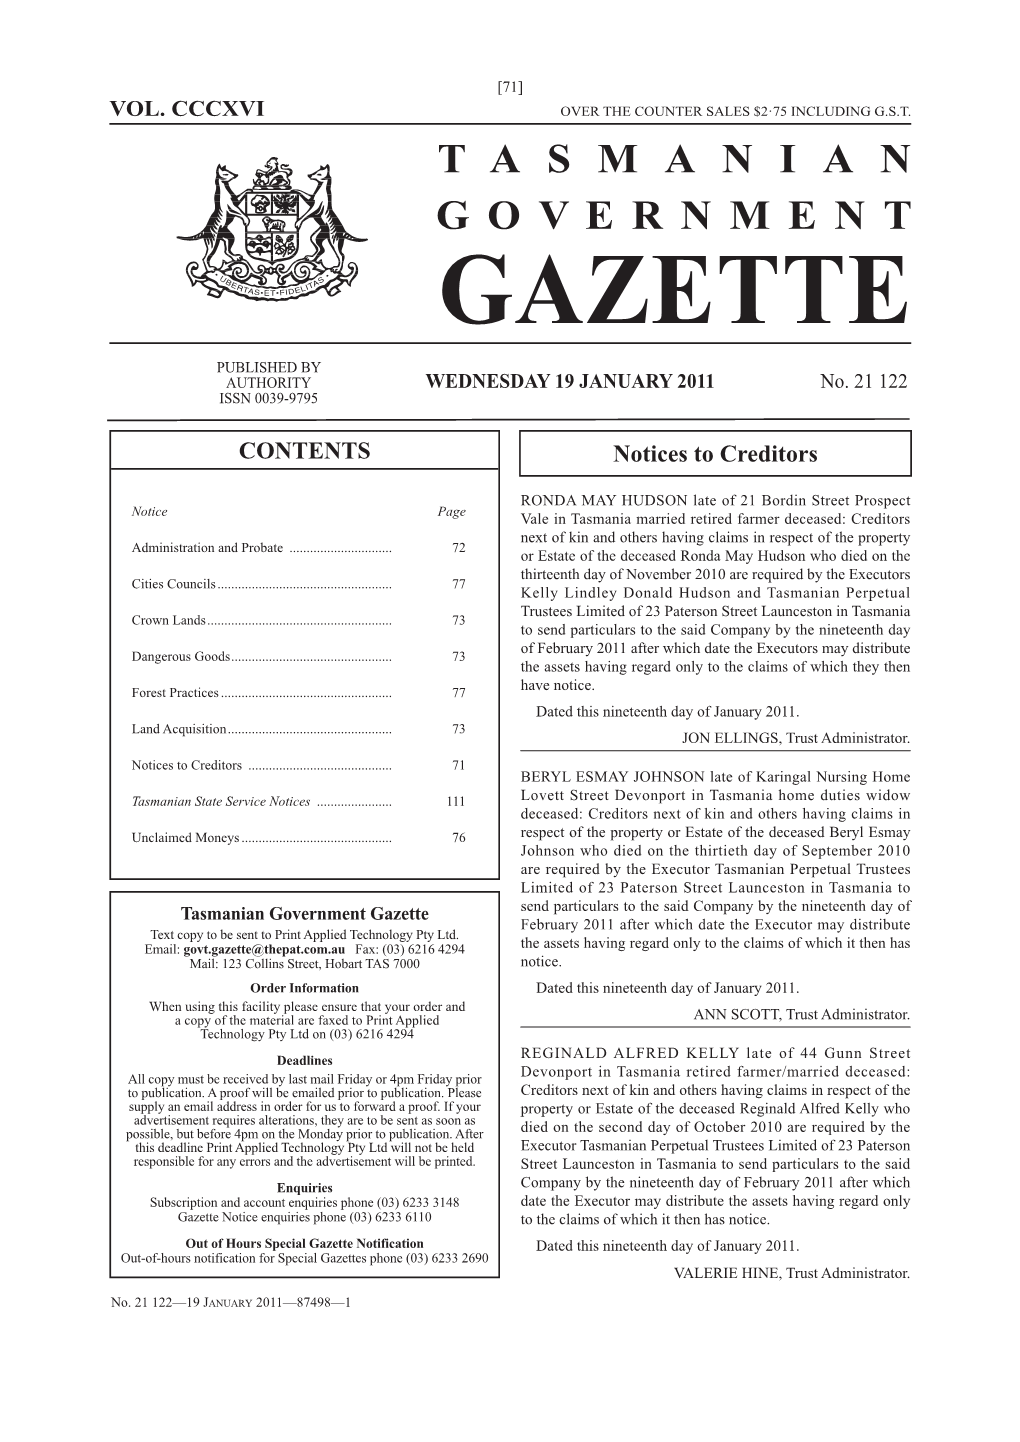 Gazette 21122